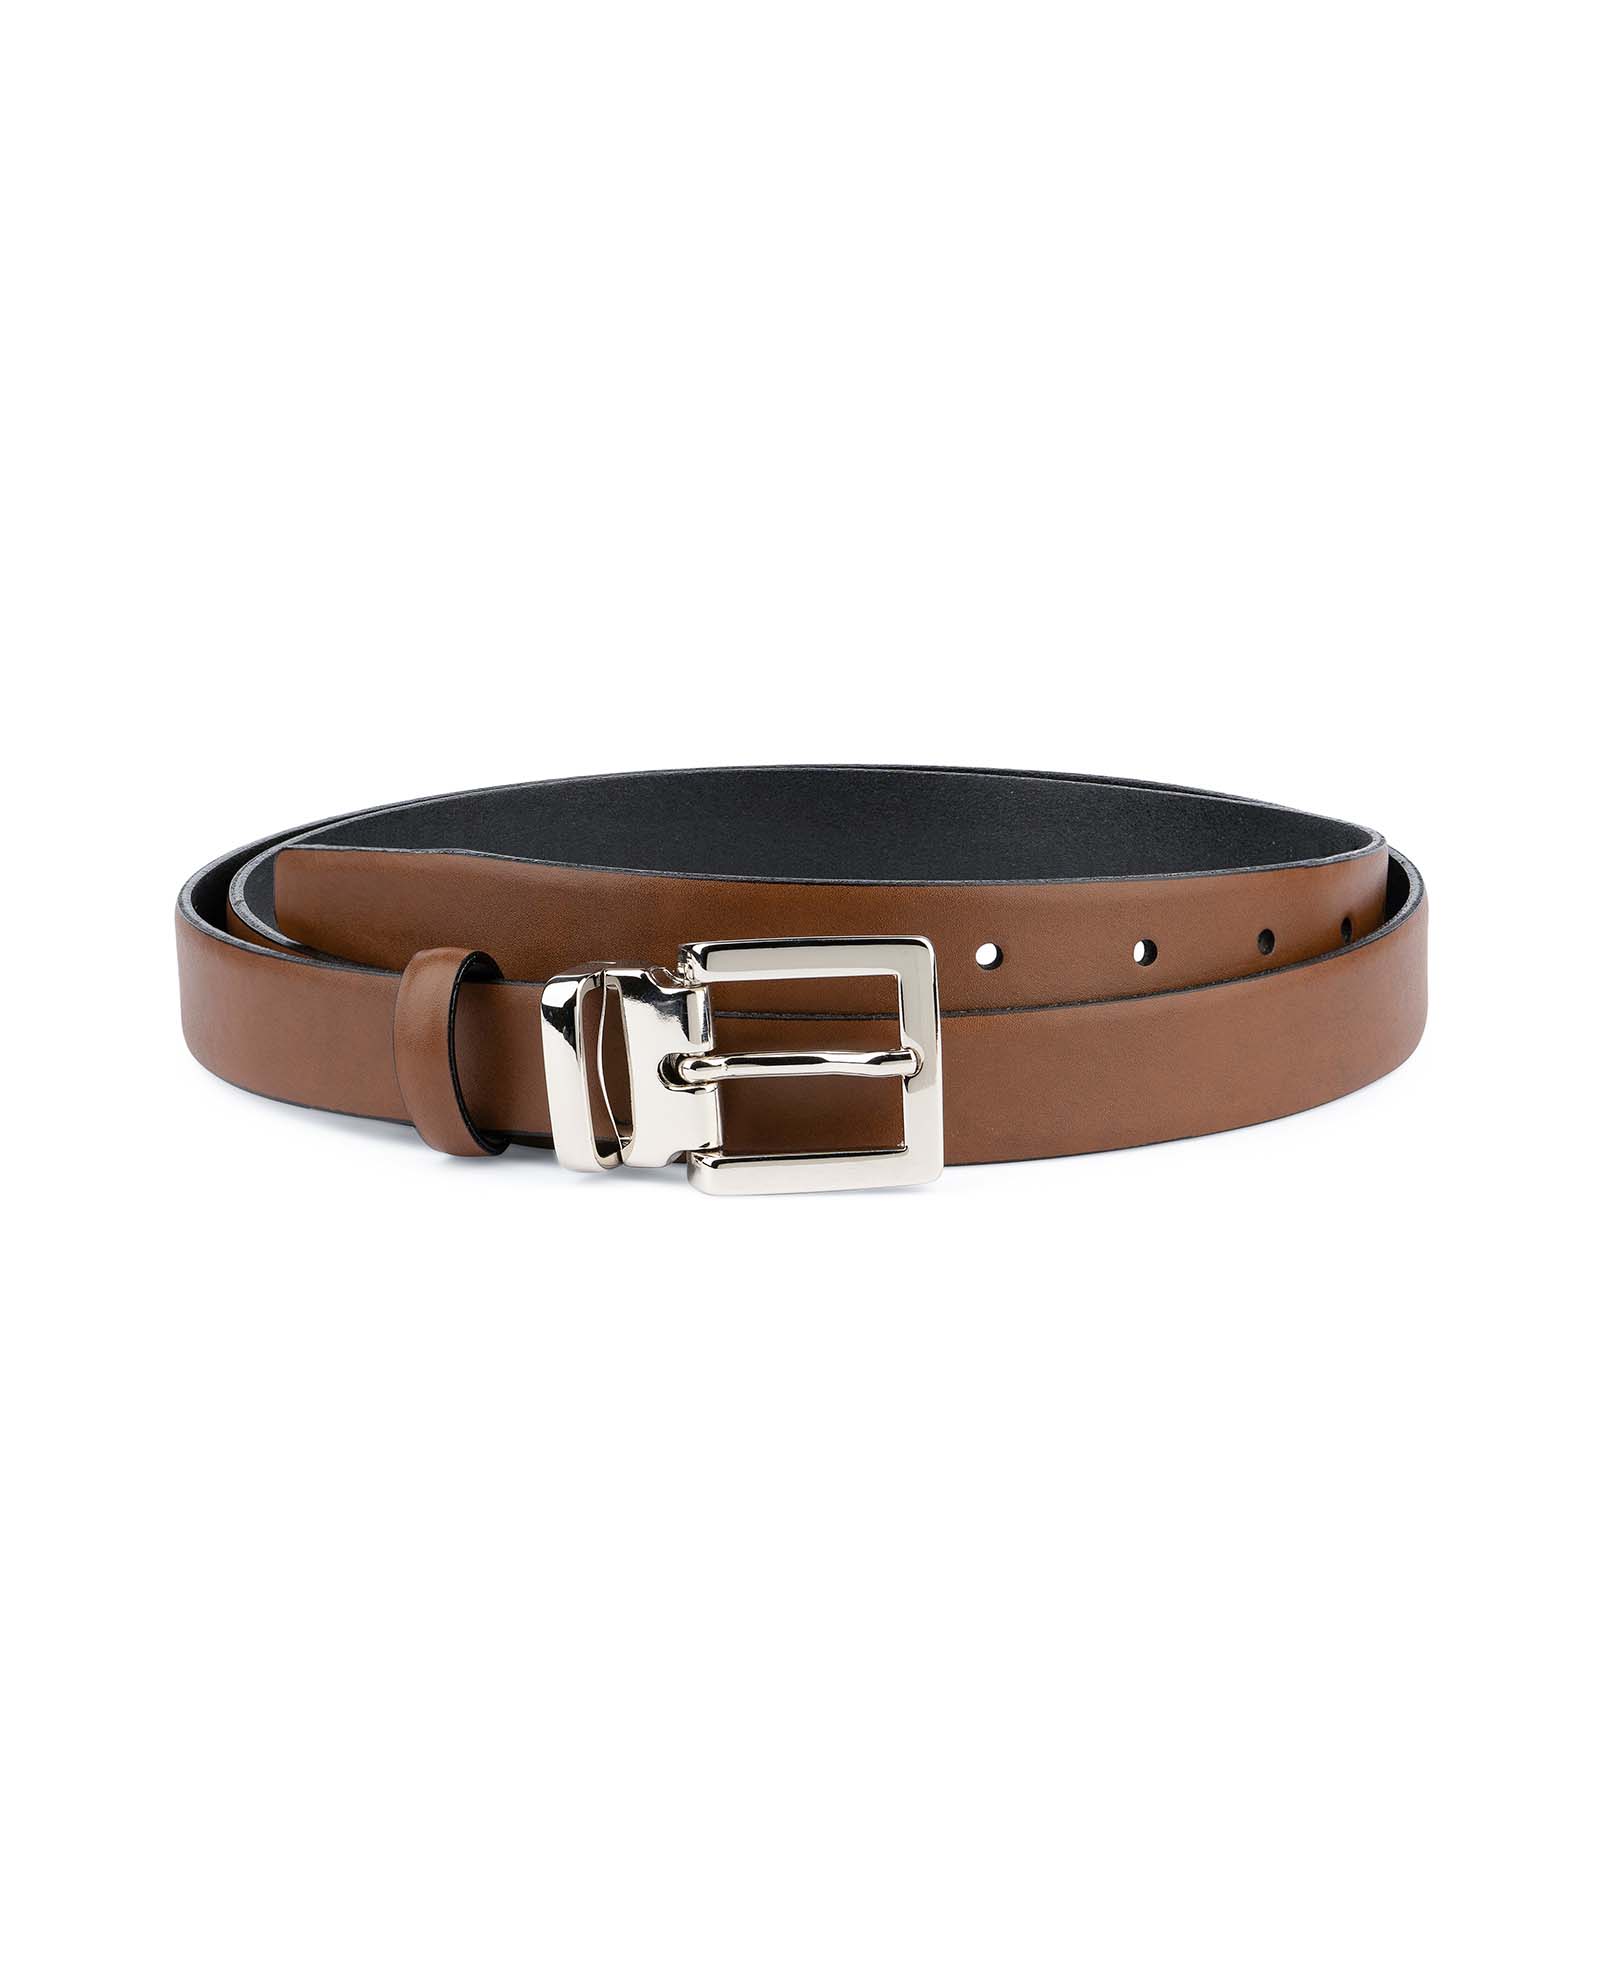 Buy Women's Tan Leather Belt | Brown 1 inch Wide | Capo Pelle